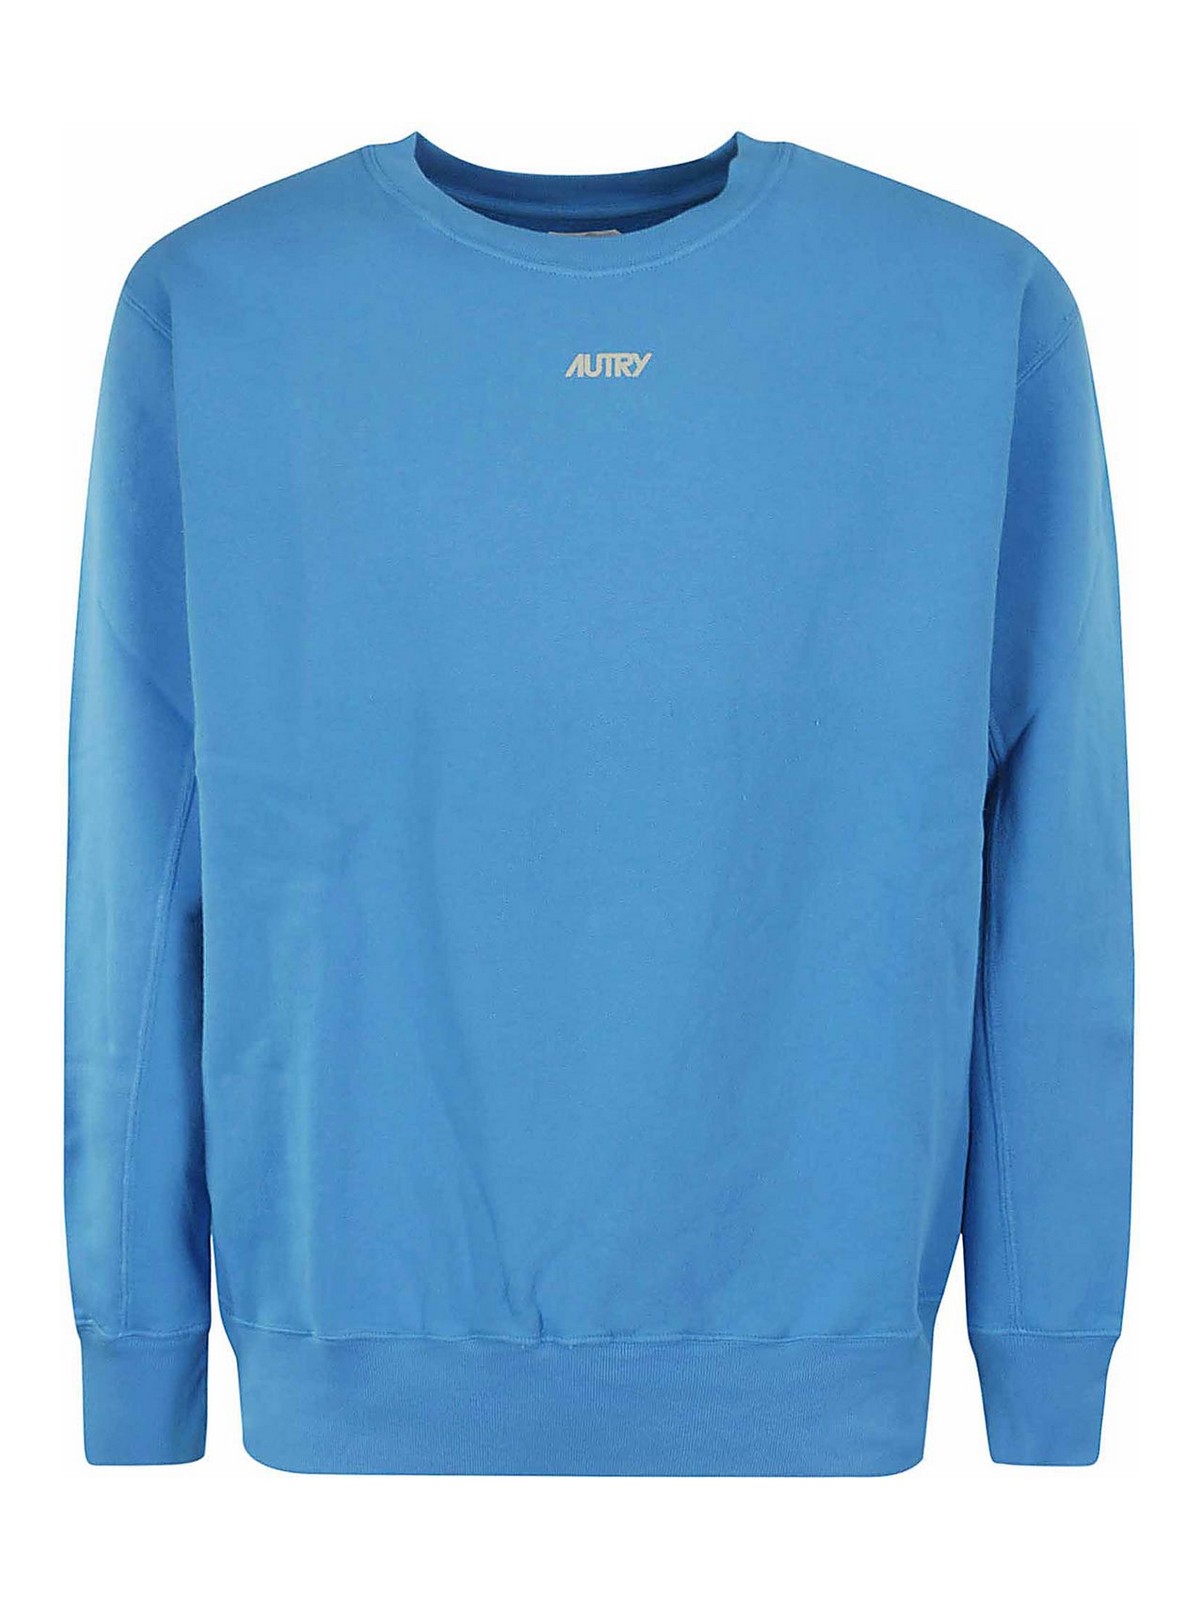 Autry Sweatshirt Bicolor In Blue